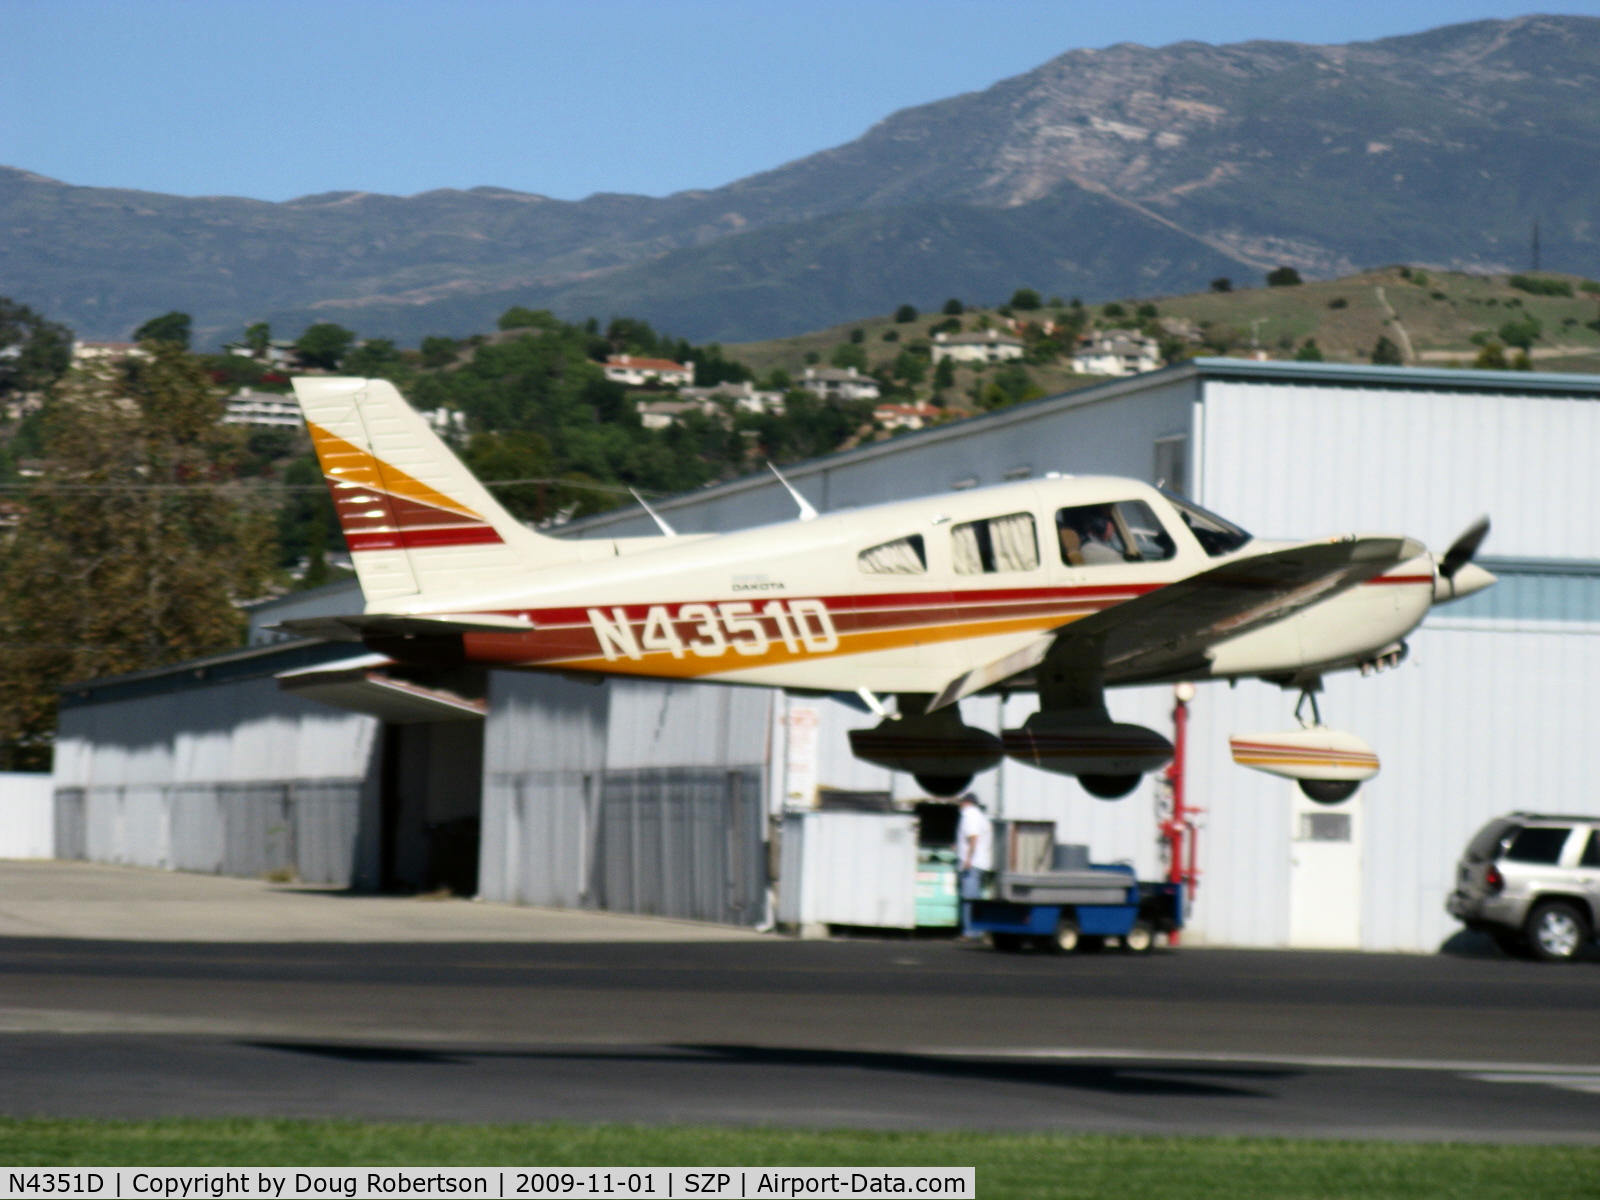 N4351D, 1984 Piper PA-28-236 Dakota C/N 28-8411016, 1984 Piper PA-28-236 DAKOTA, Lycoming O-540-J3A5D 235 hp, flaps landing Rwy 04